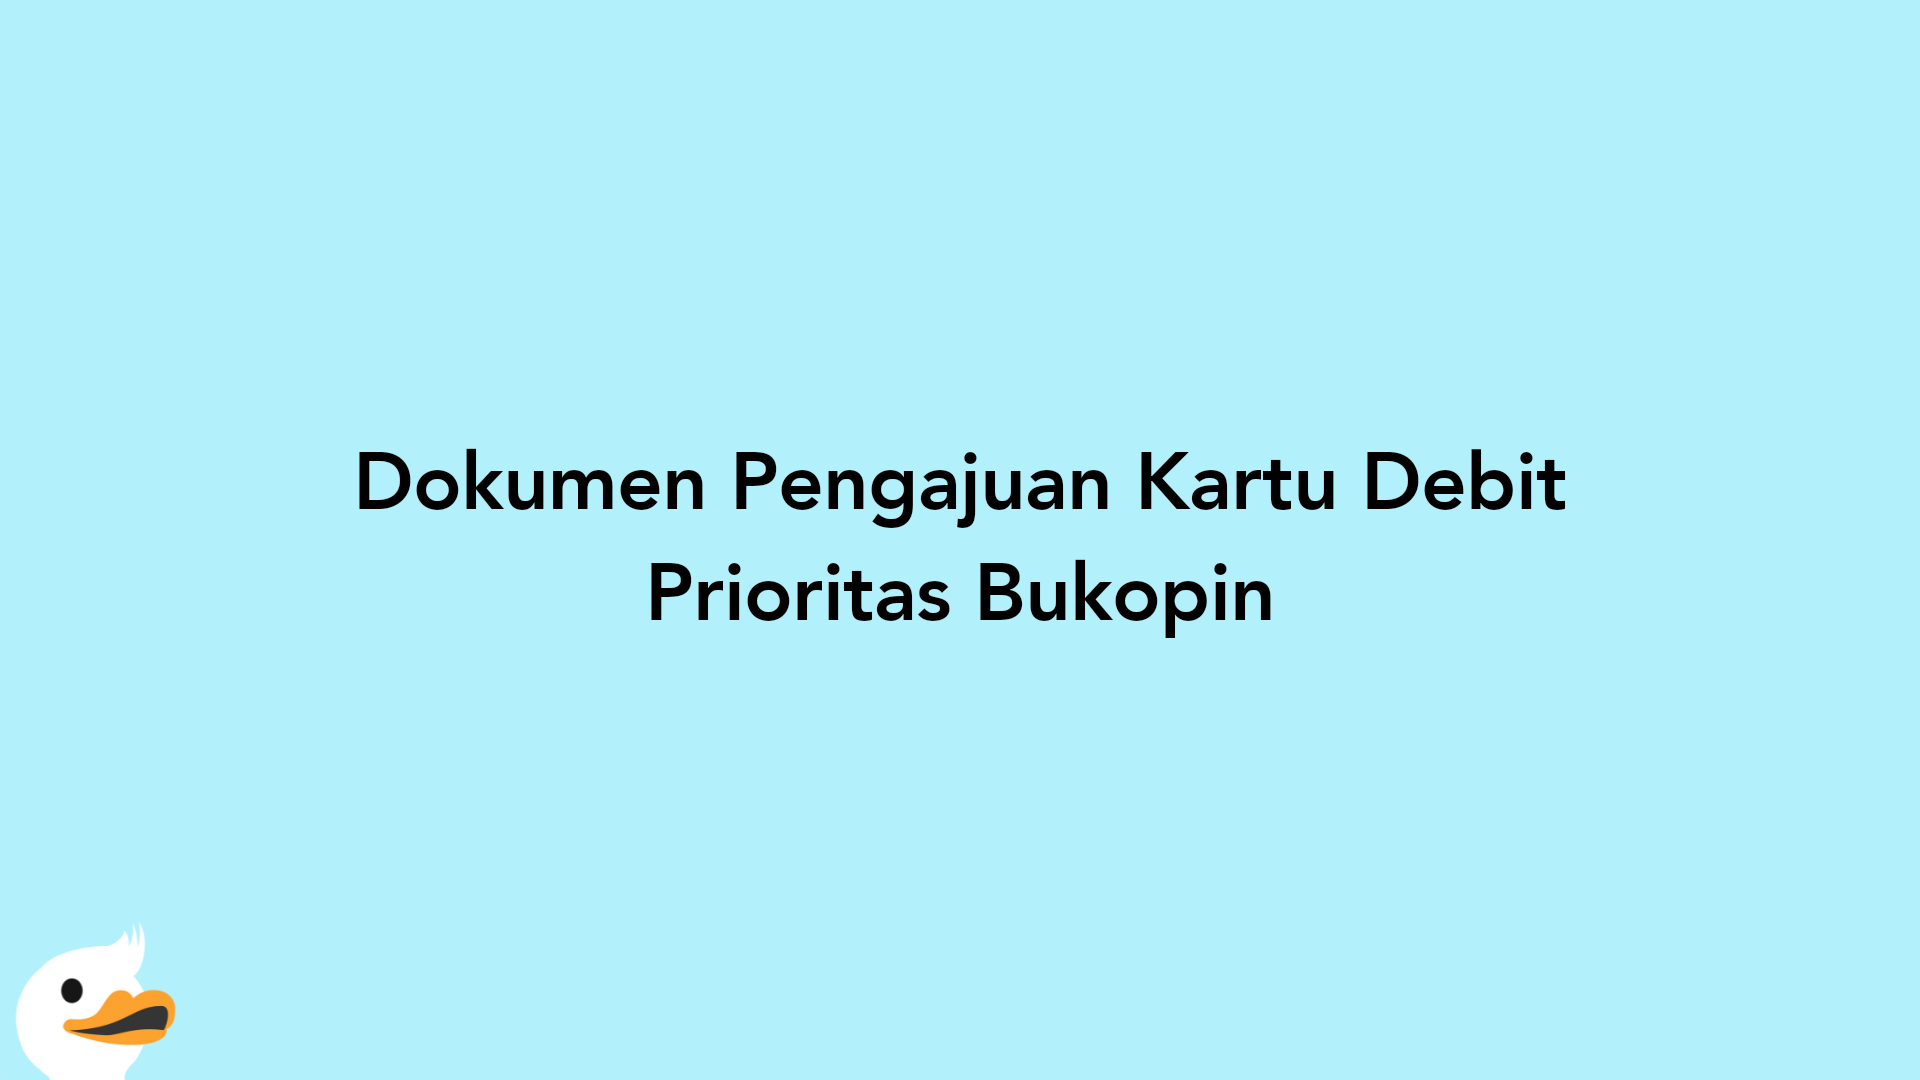 Dokumen Pengajuan Kartu Debit Prioritas Bukopin